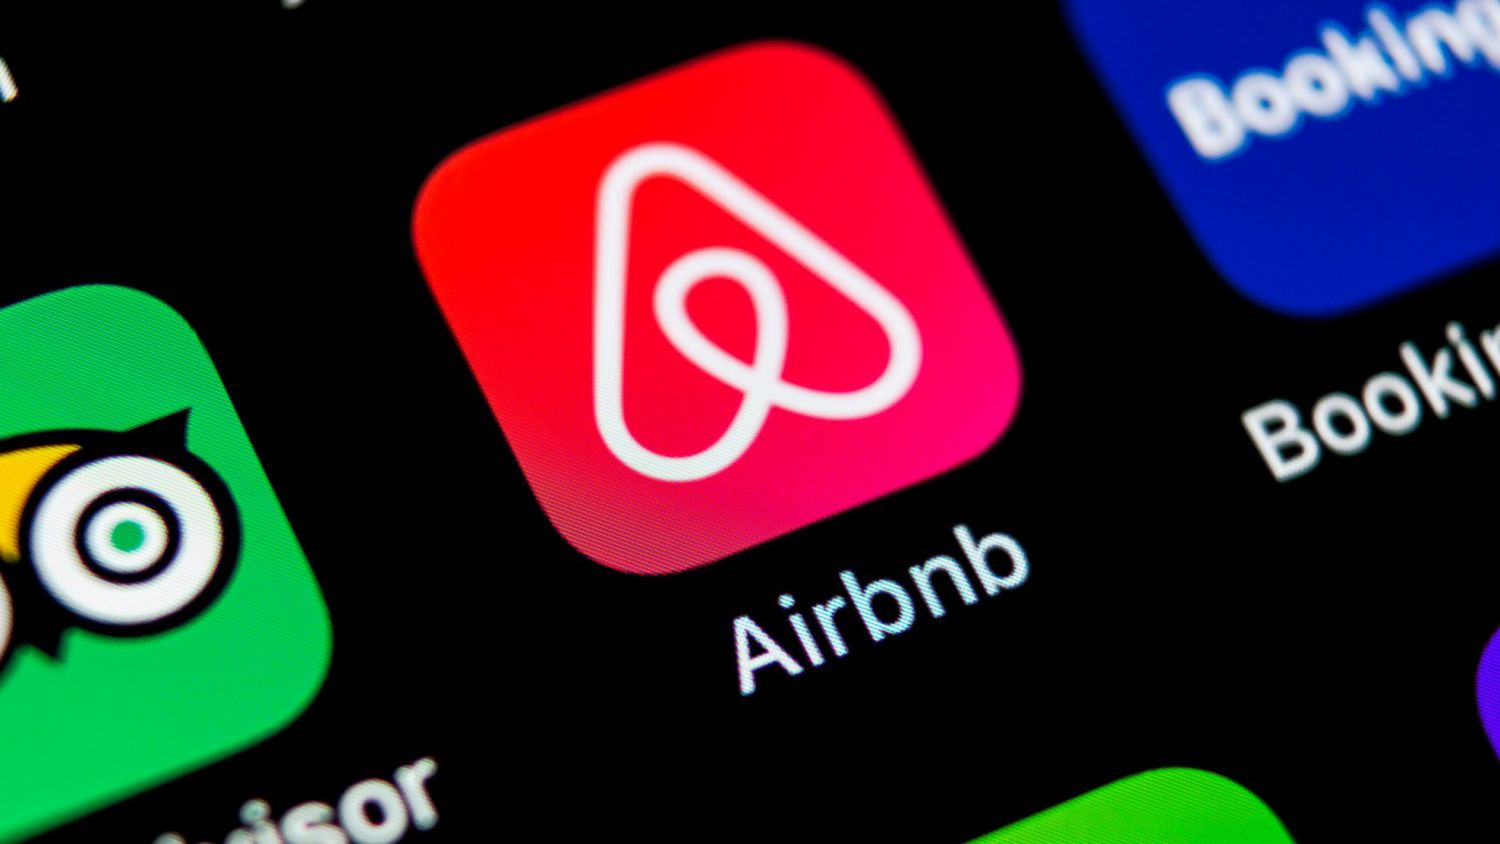 报告发现由于墨尔本的收入下降 Airbnb无法替代长期租房